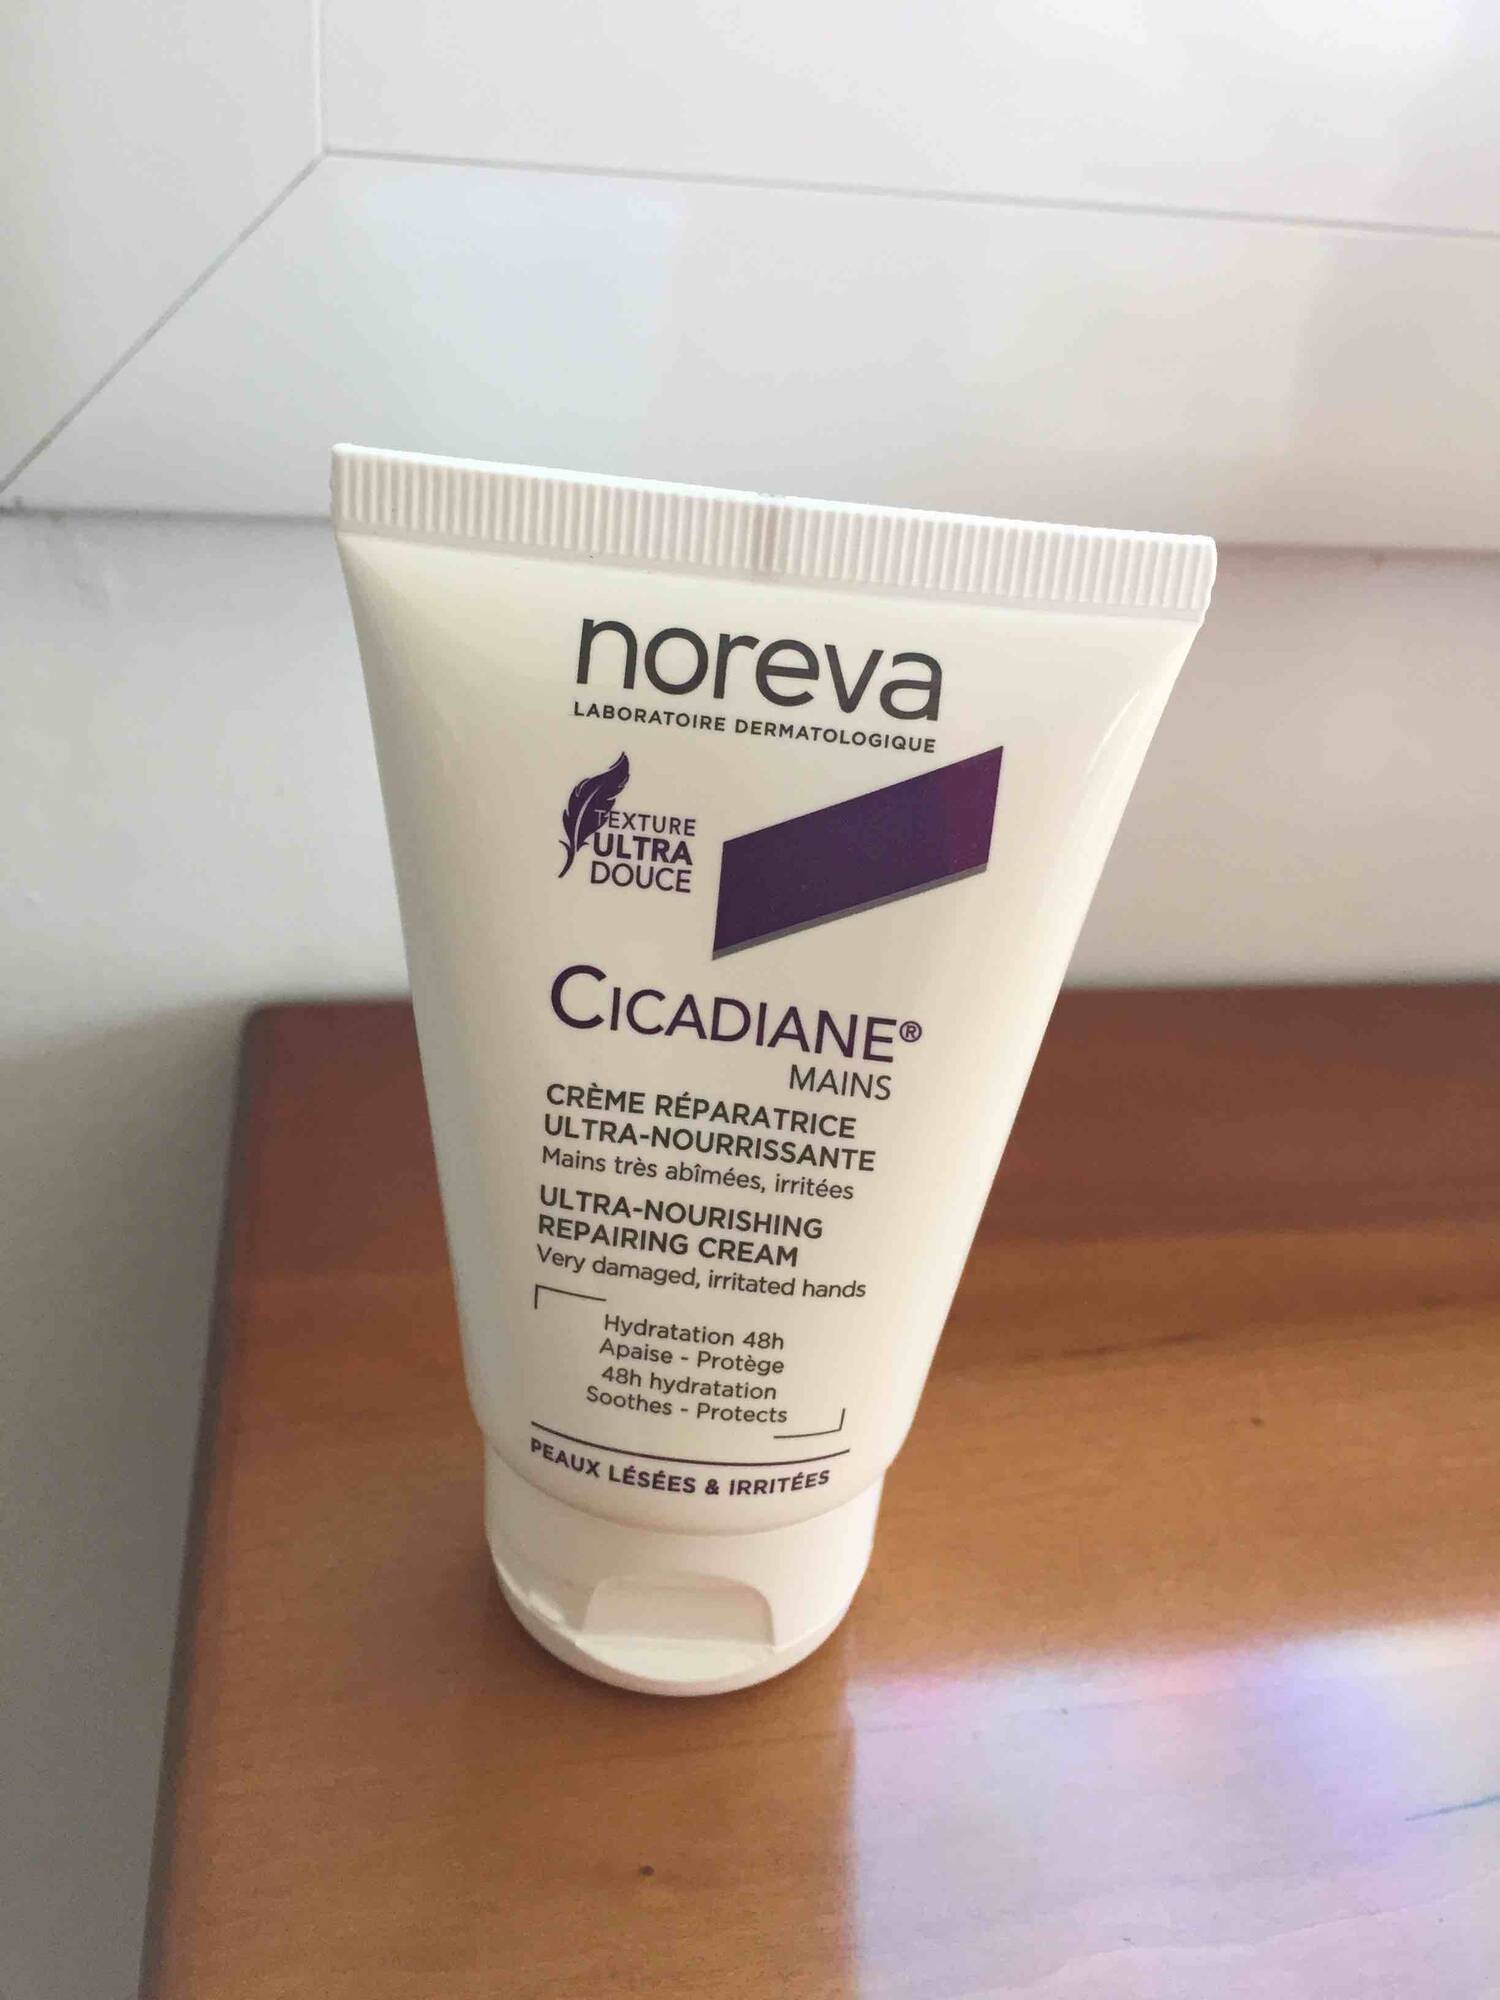 NOREVA - Cicadiane - Crème réparatrice ultra-nourrissante mains